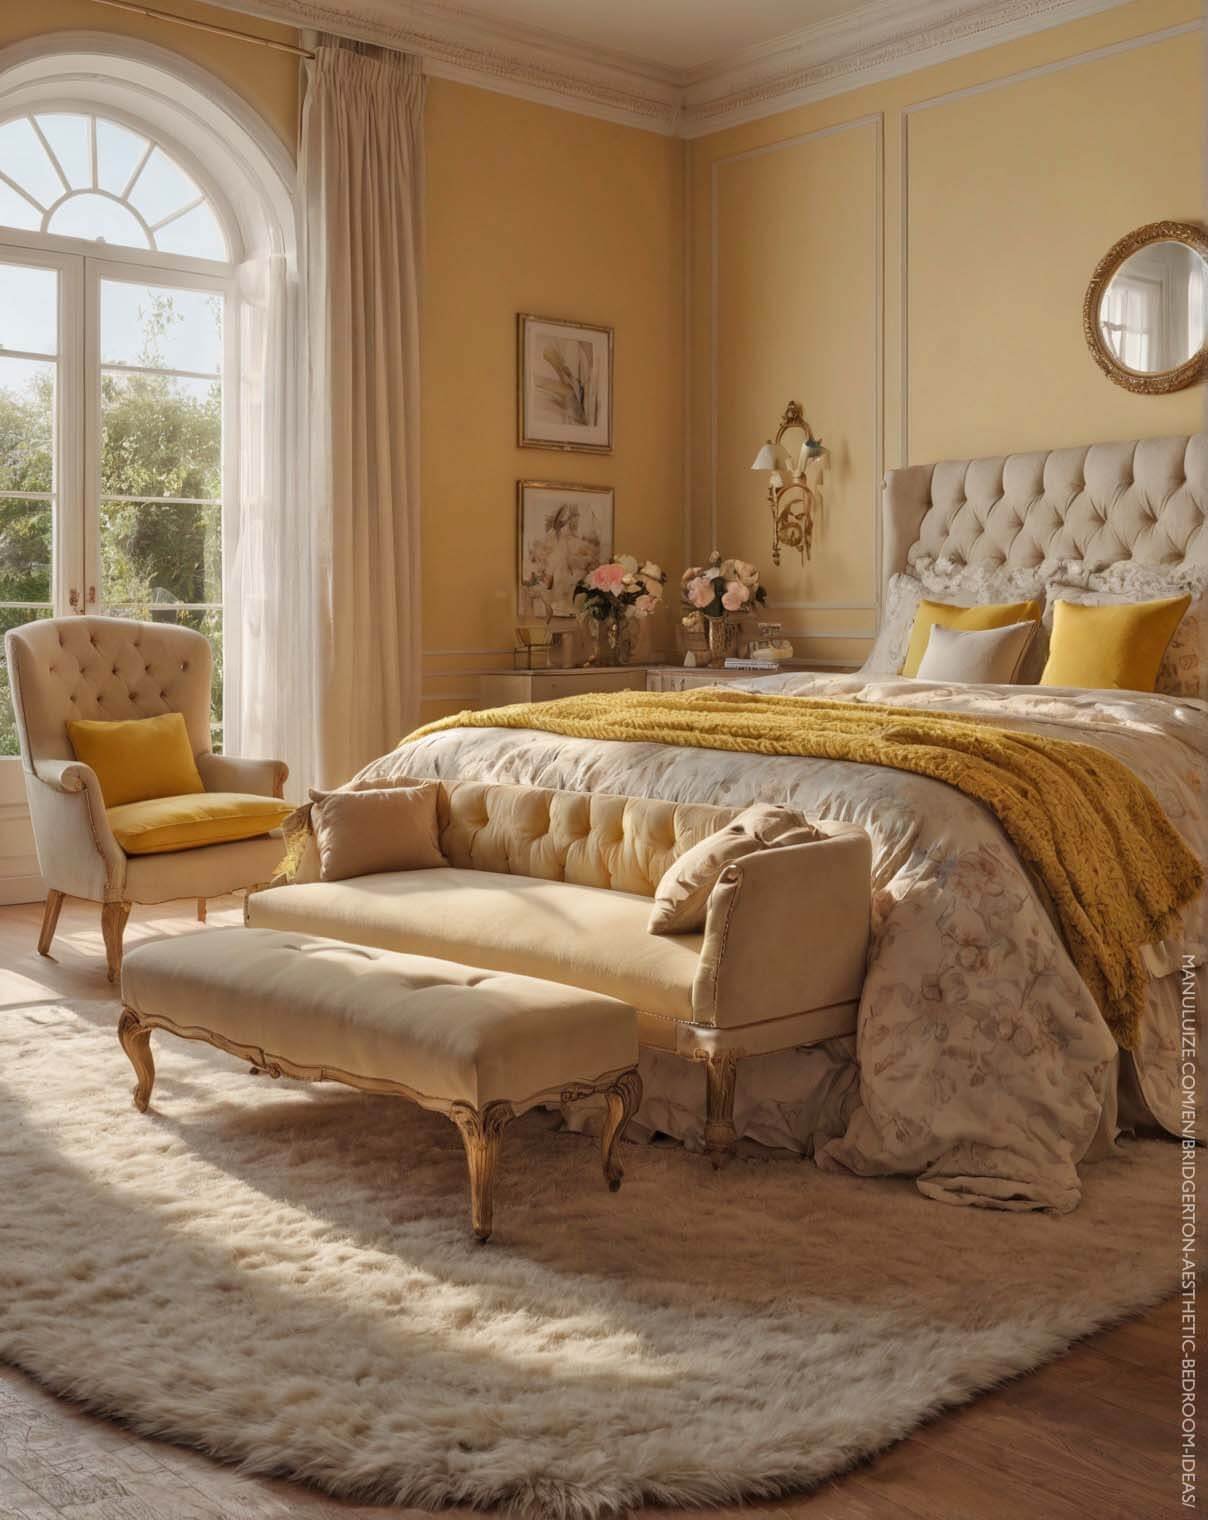 Yellow pastel bedroom decor